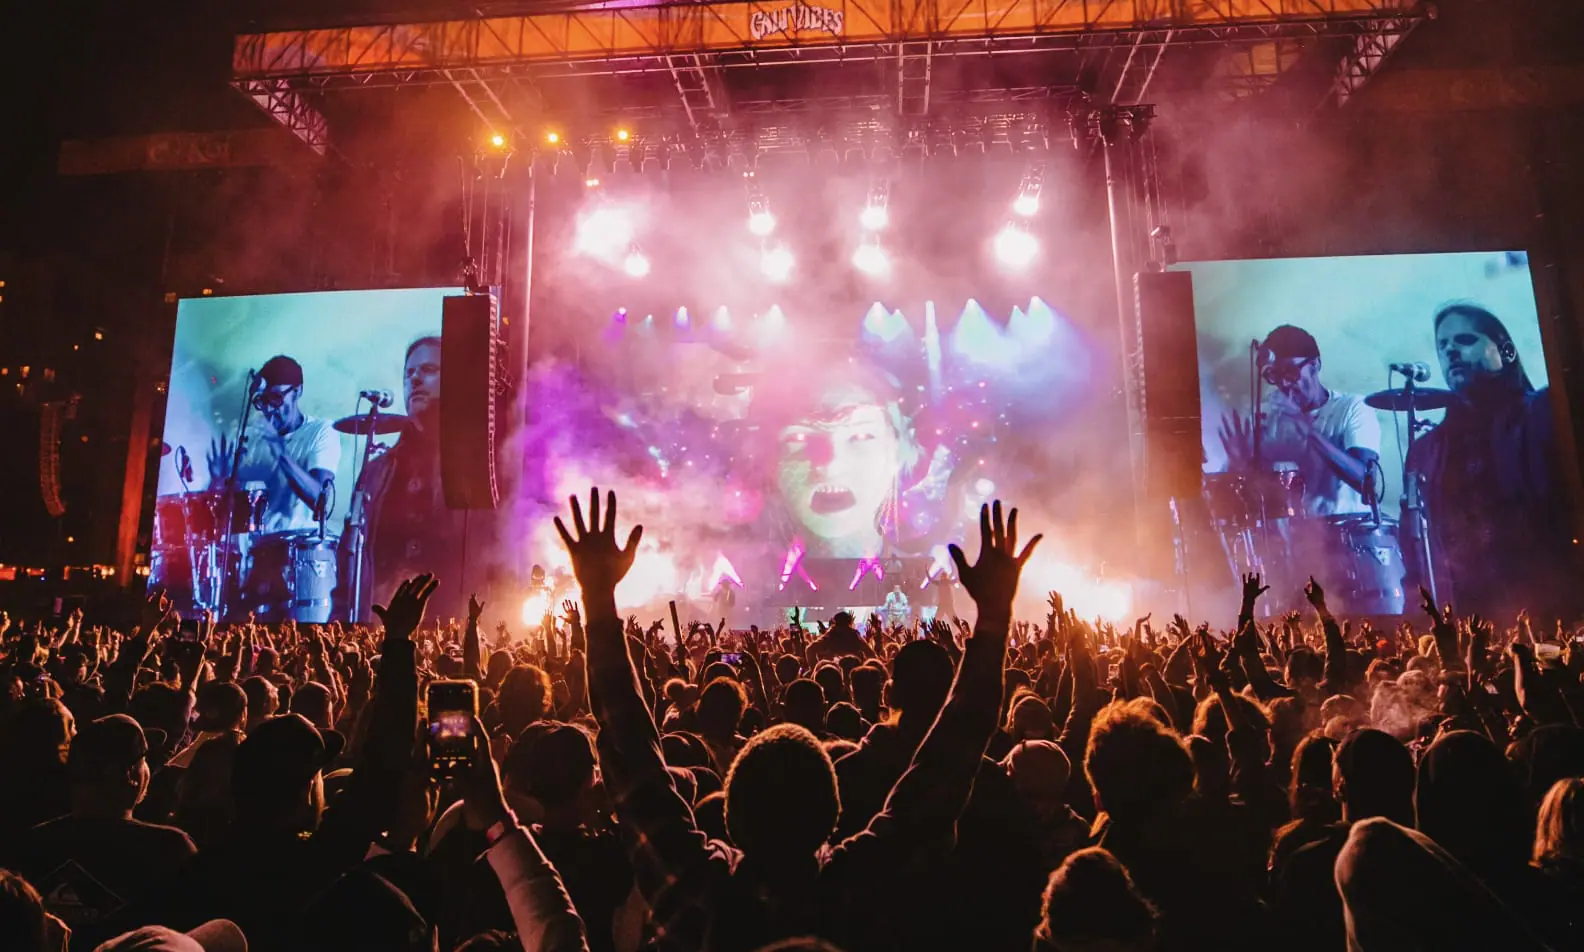 Cali Vibes Music Festival 2024 Unveils Lineup: Gwen Stefani